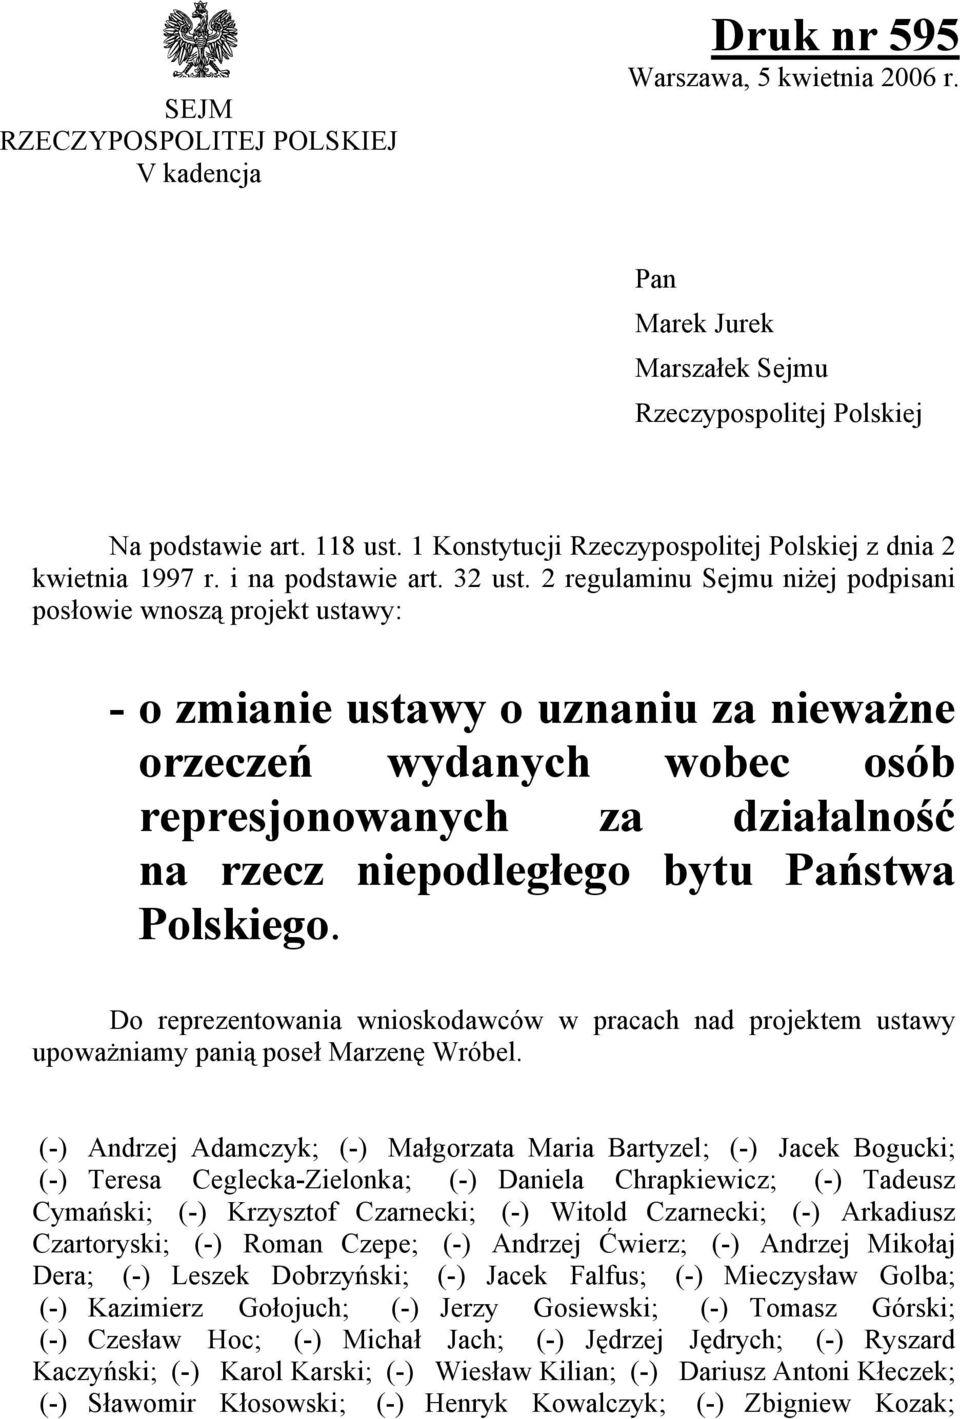 2 regulaminu Sejmu niżej podpisani posłowie wnoszą projekt ustawy: - o zmianie ustawy o uznaniu za nieważne orzeczeń wydanych wobec osób represjonowanych za działalność na rzecz niepodległego bytu